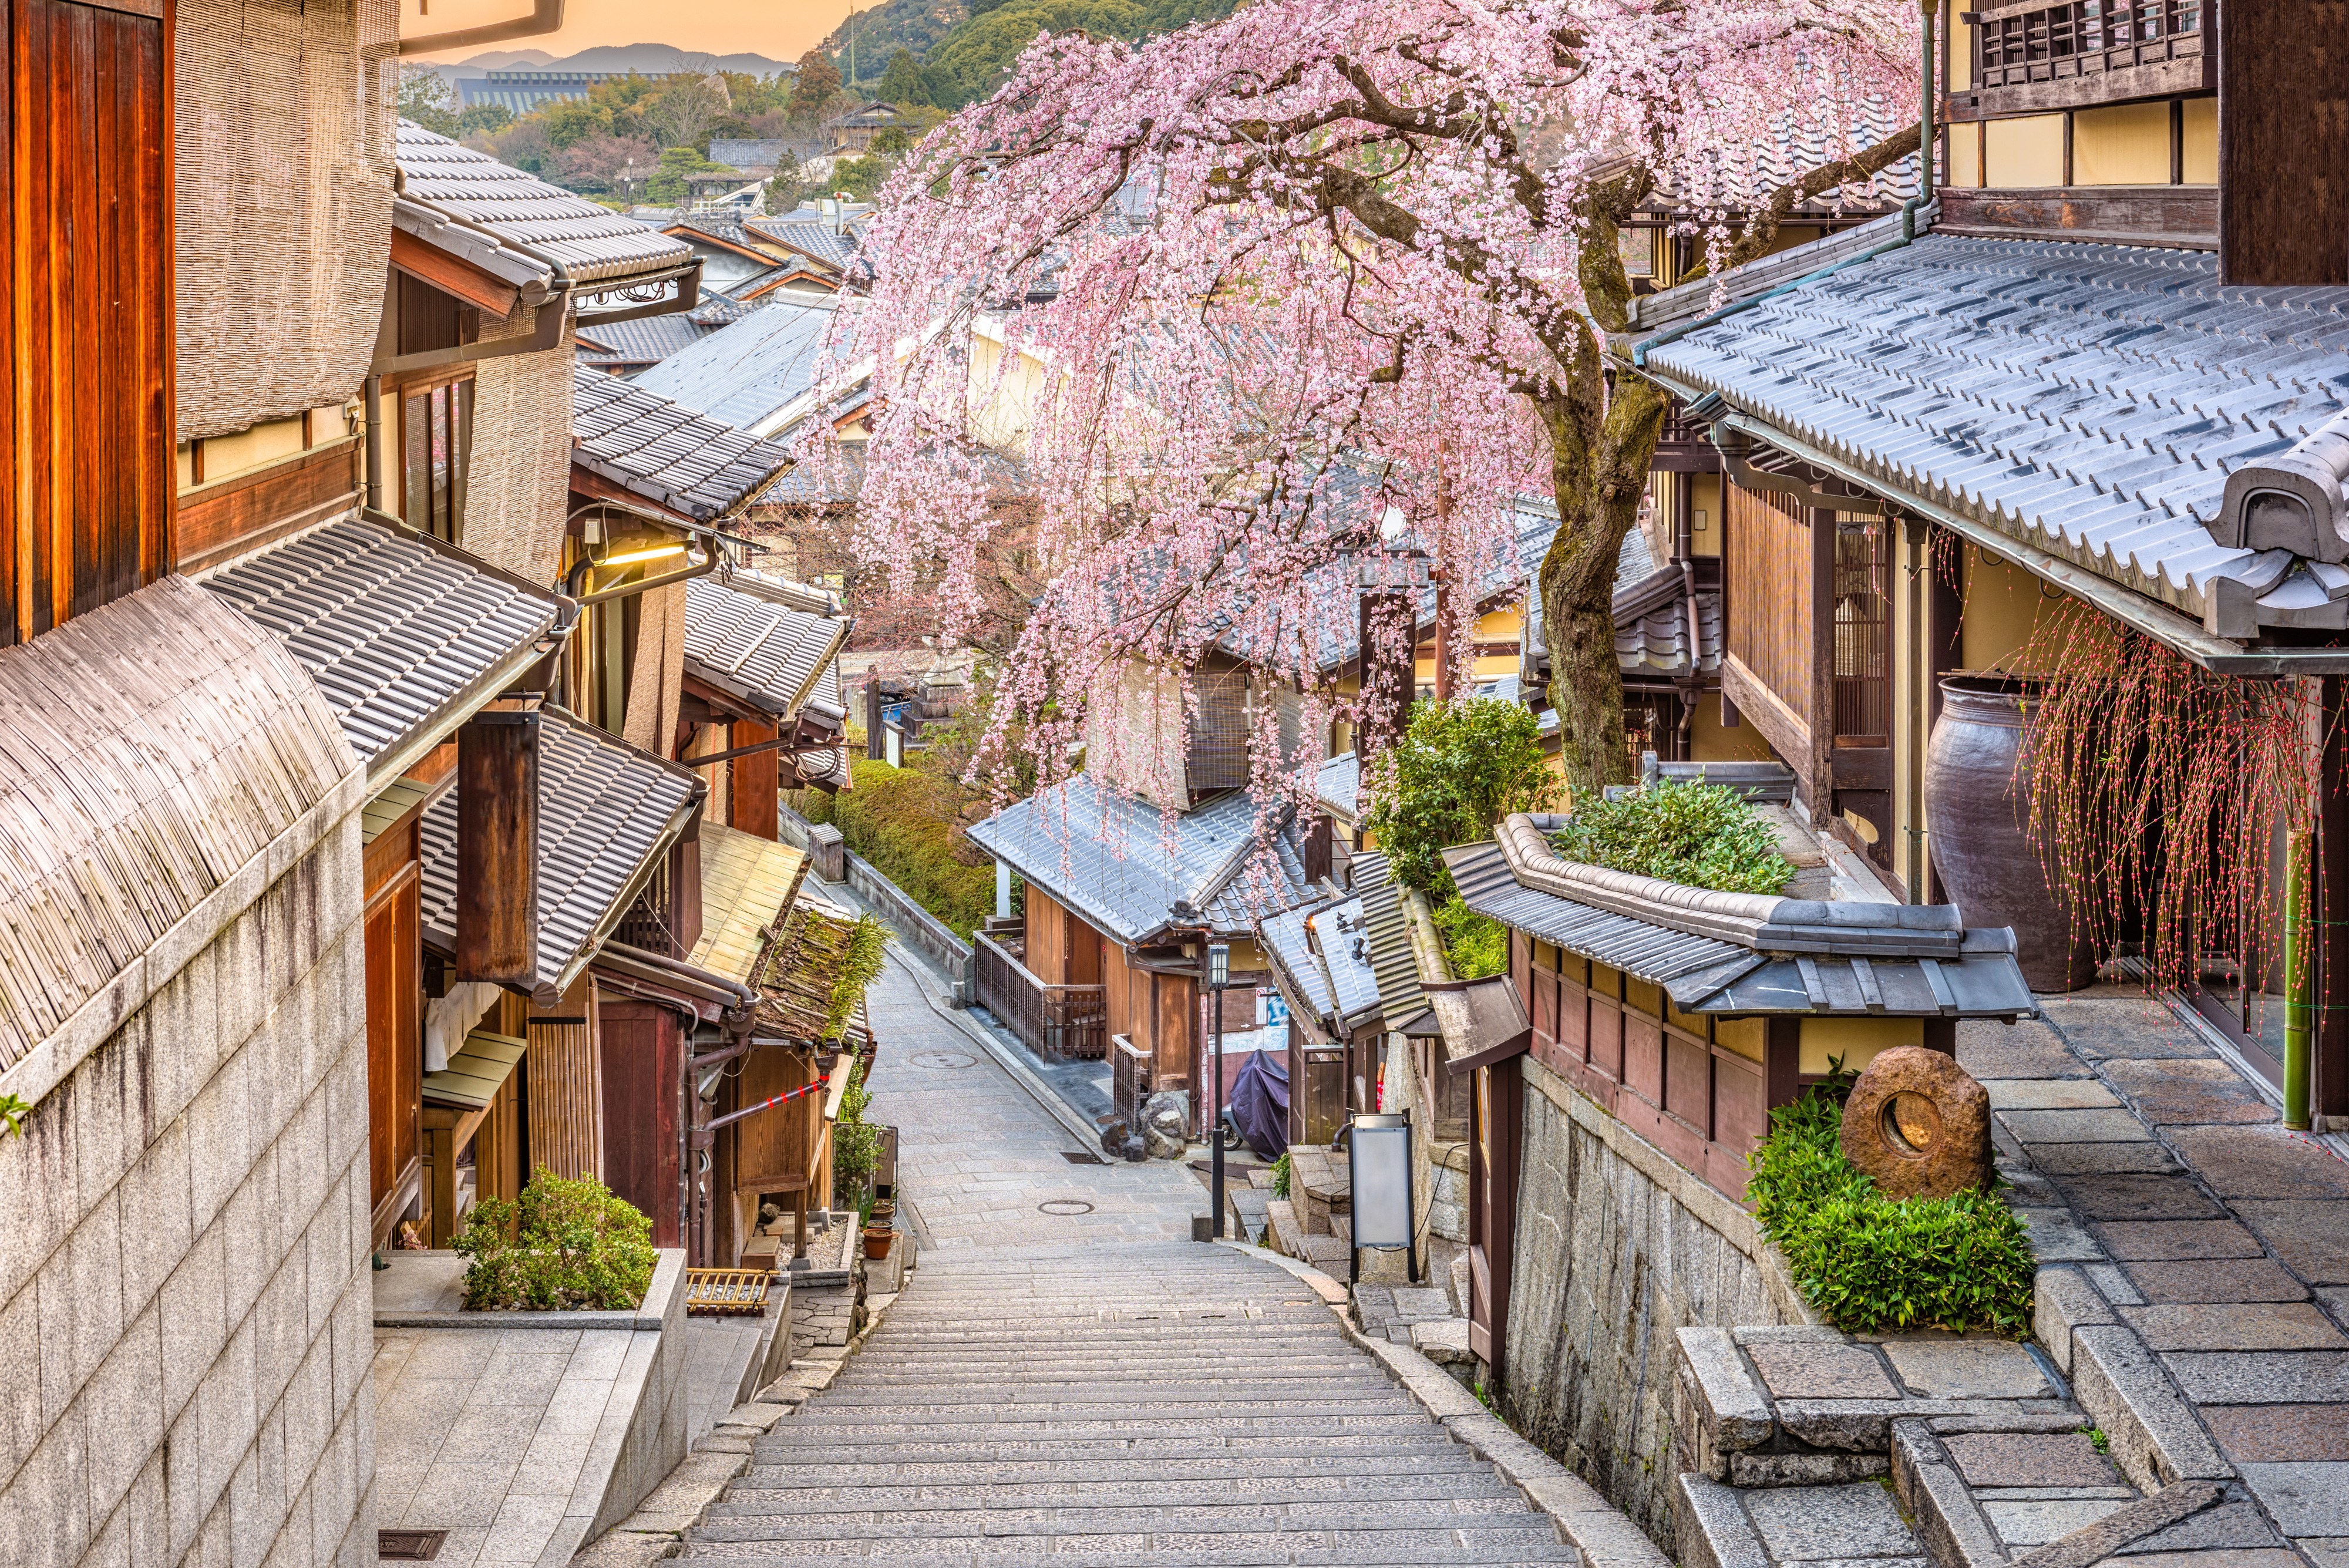 日本风景壁纸高清小镇图片